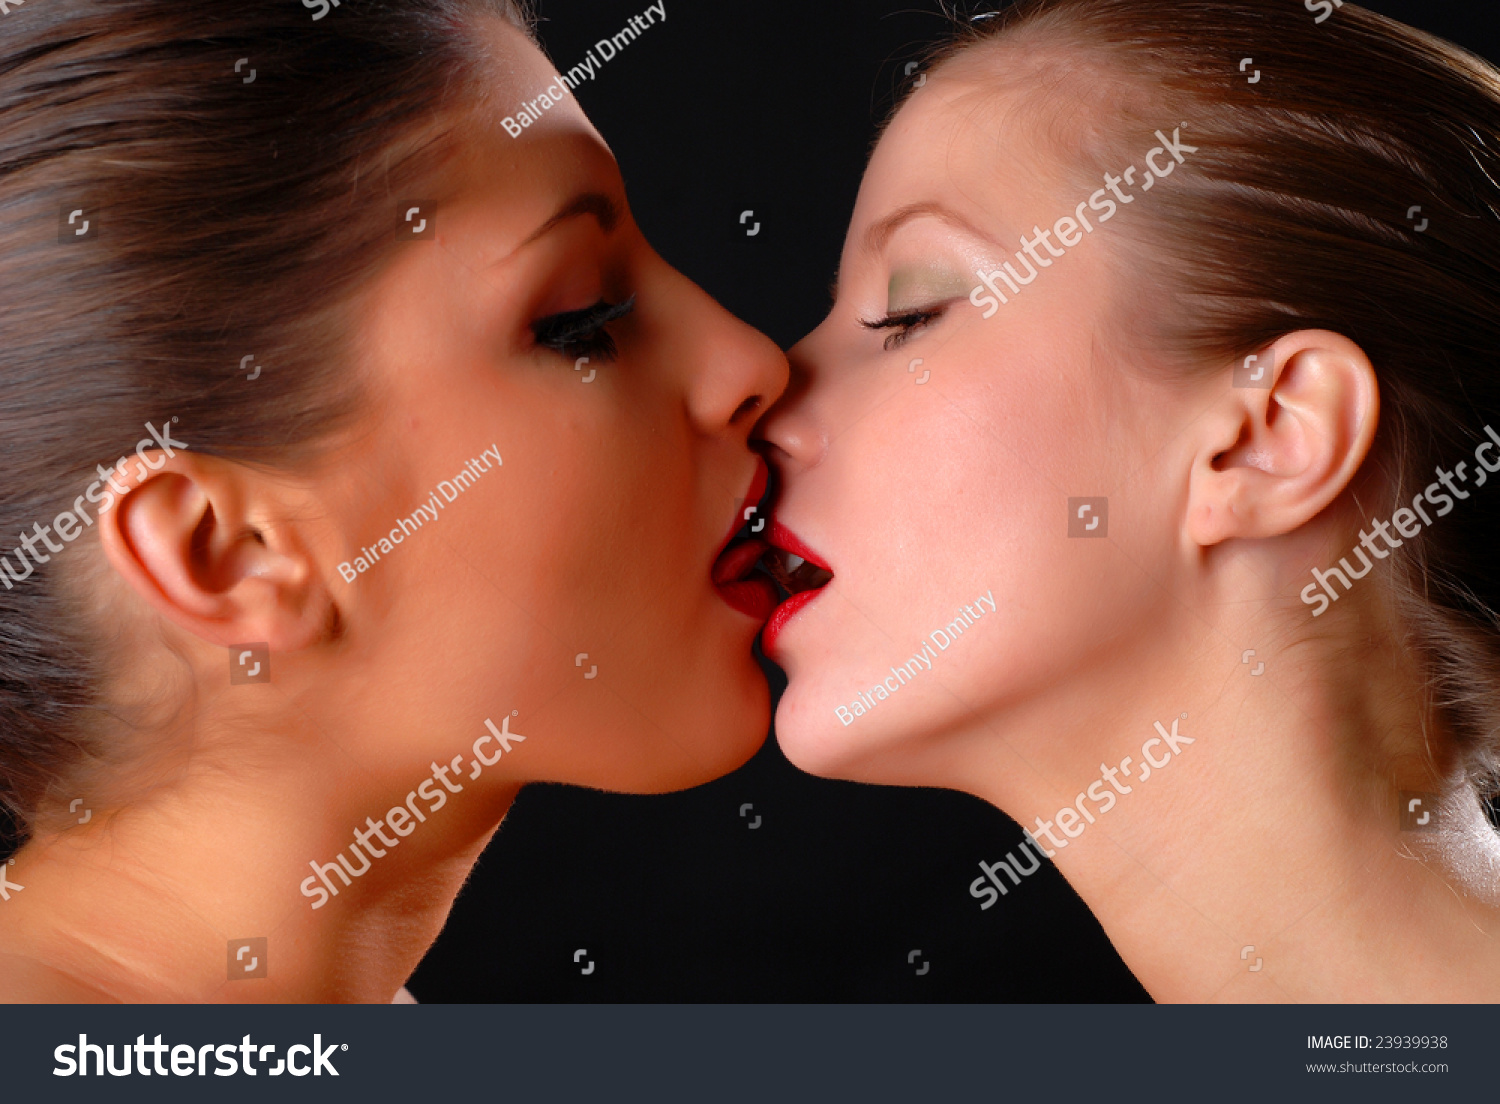 Women black black kissing women Former Miss.